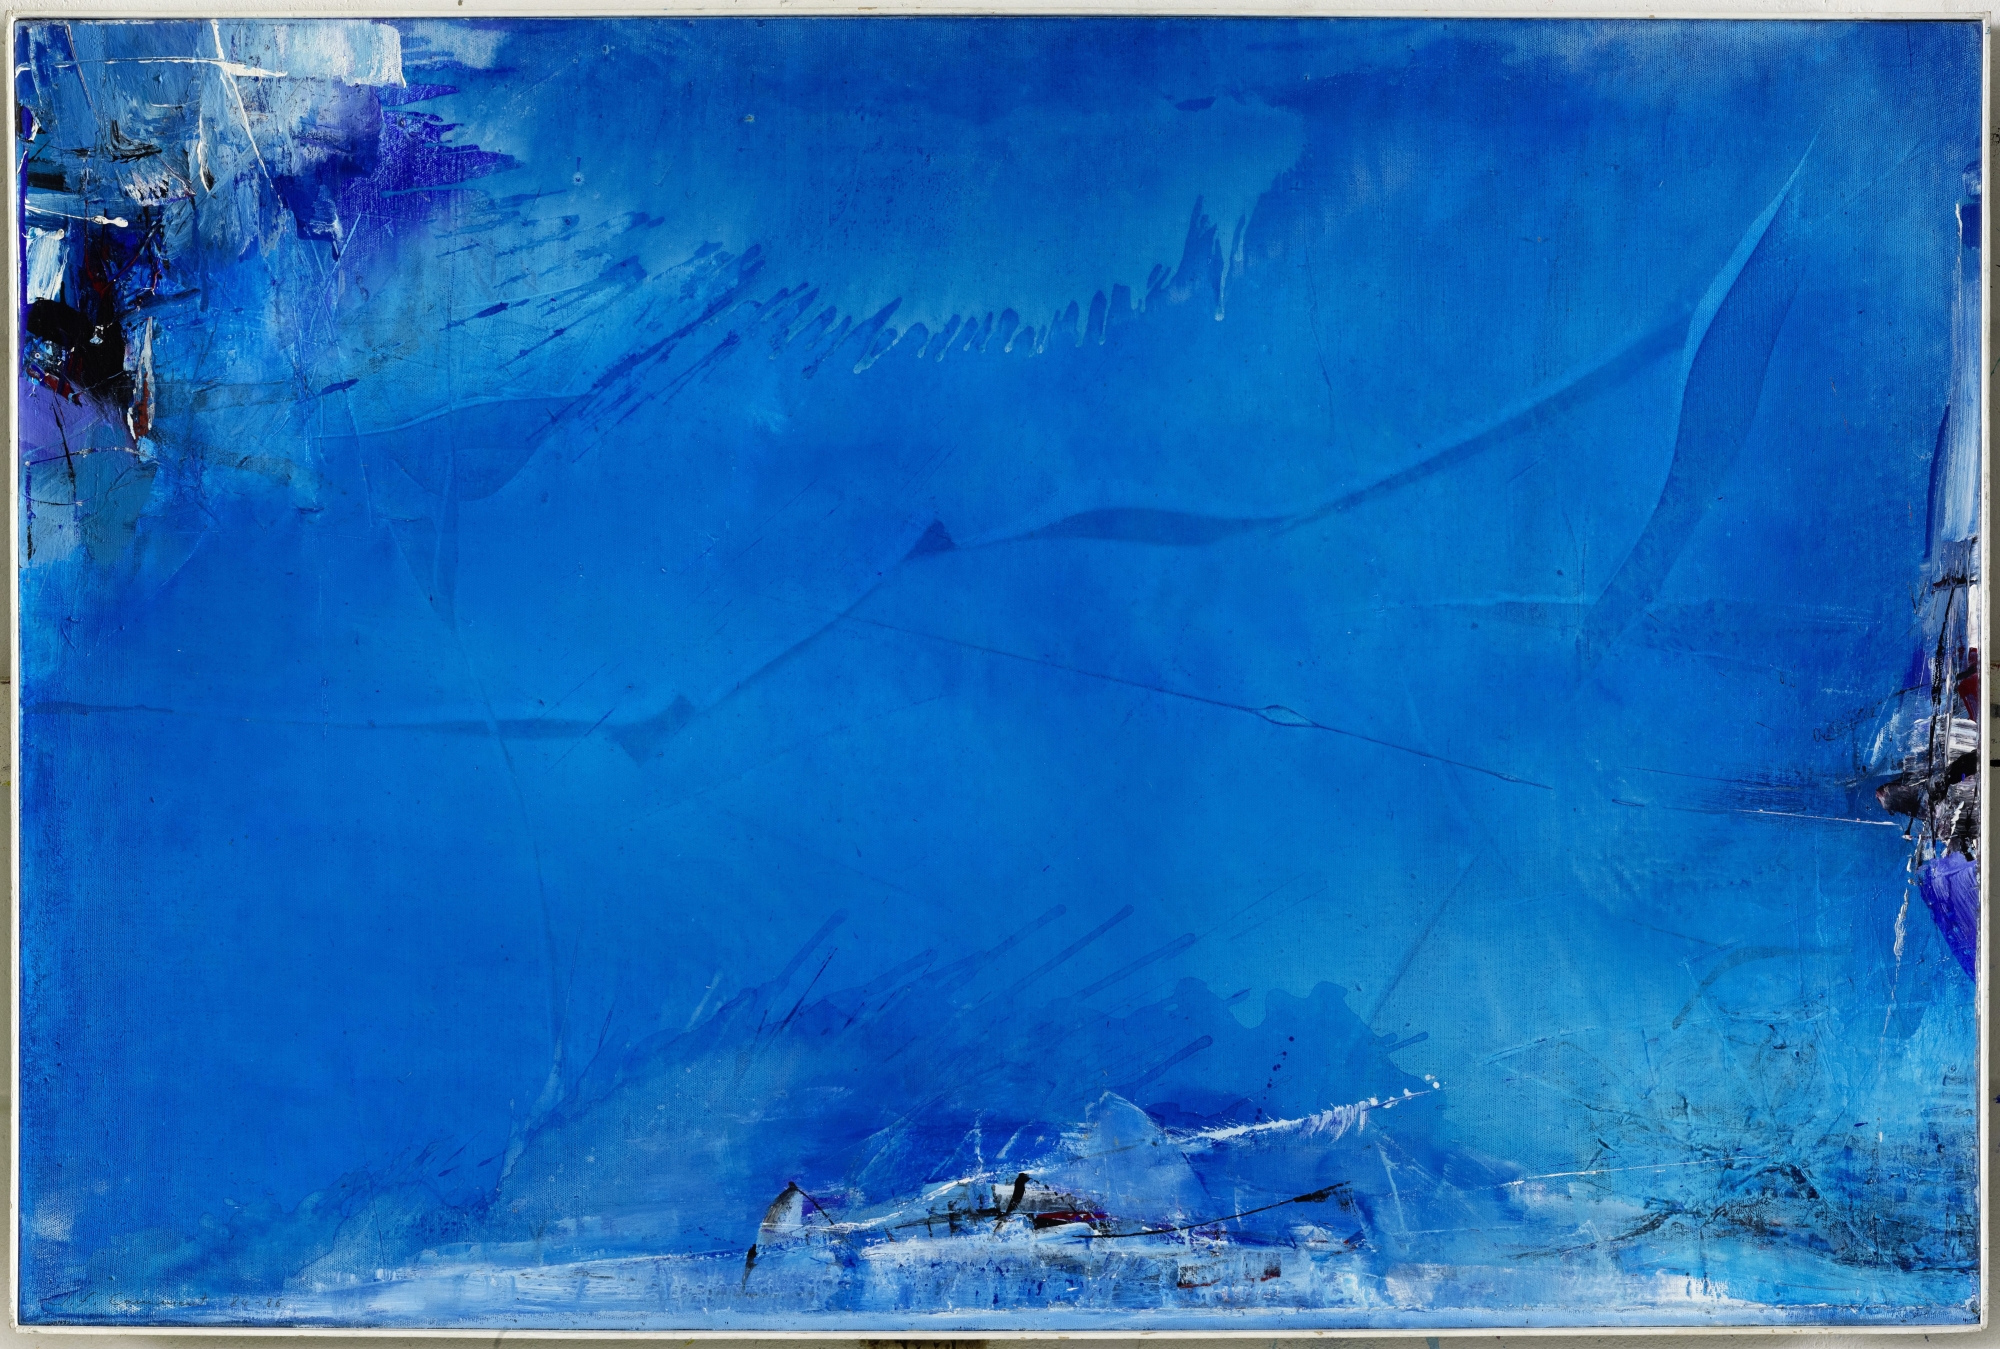 "Du ciel et de l'eau", une huile sur toile datée de 1984-86, exposée parmi une soixantaine d'autres à la Halle des expositions de Delémont.